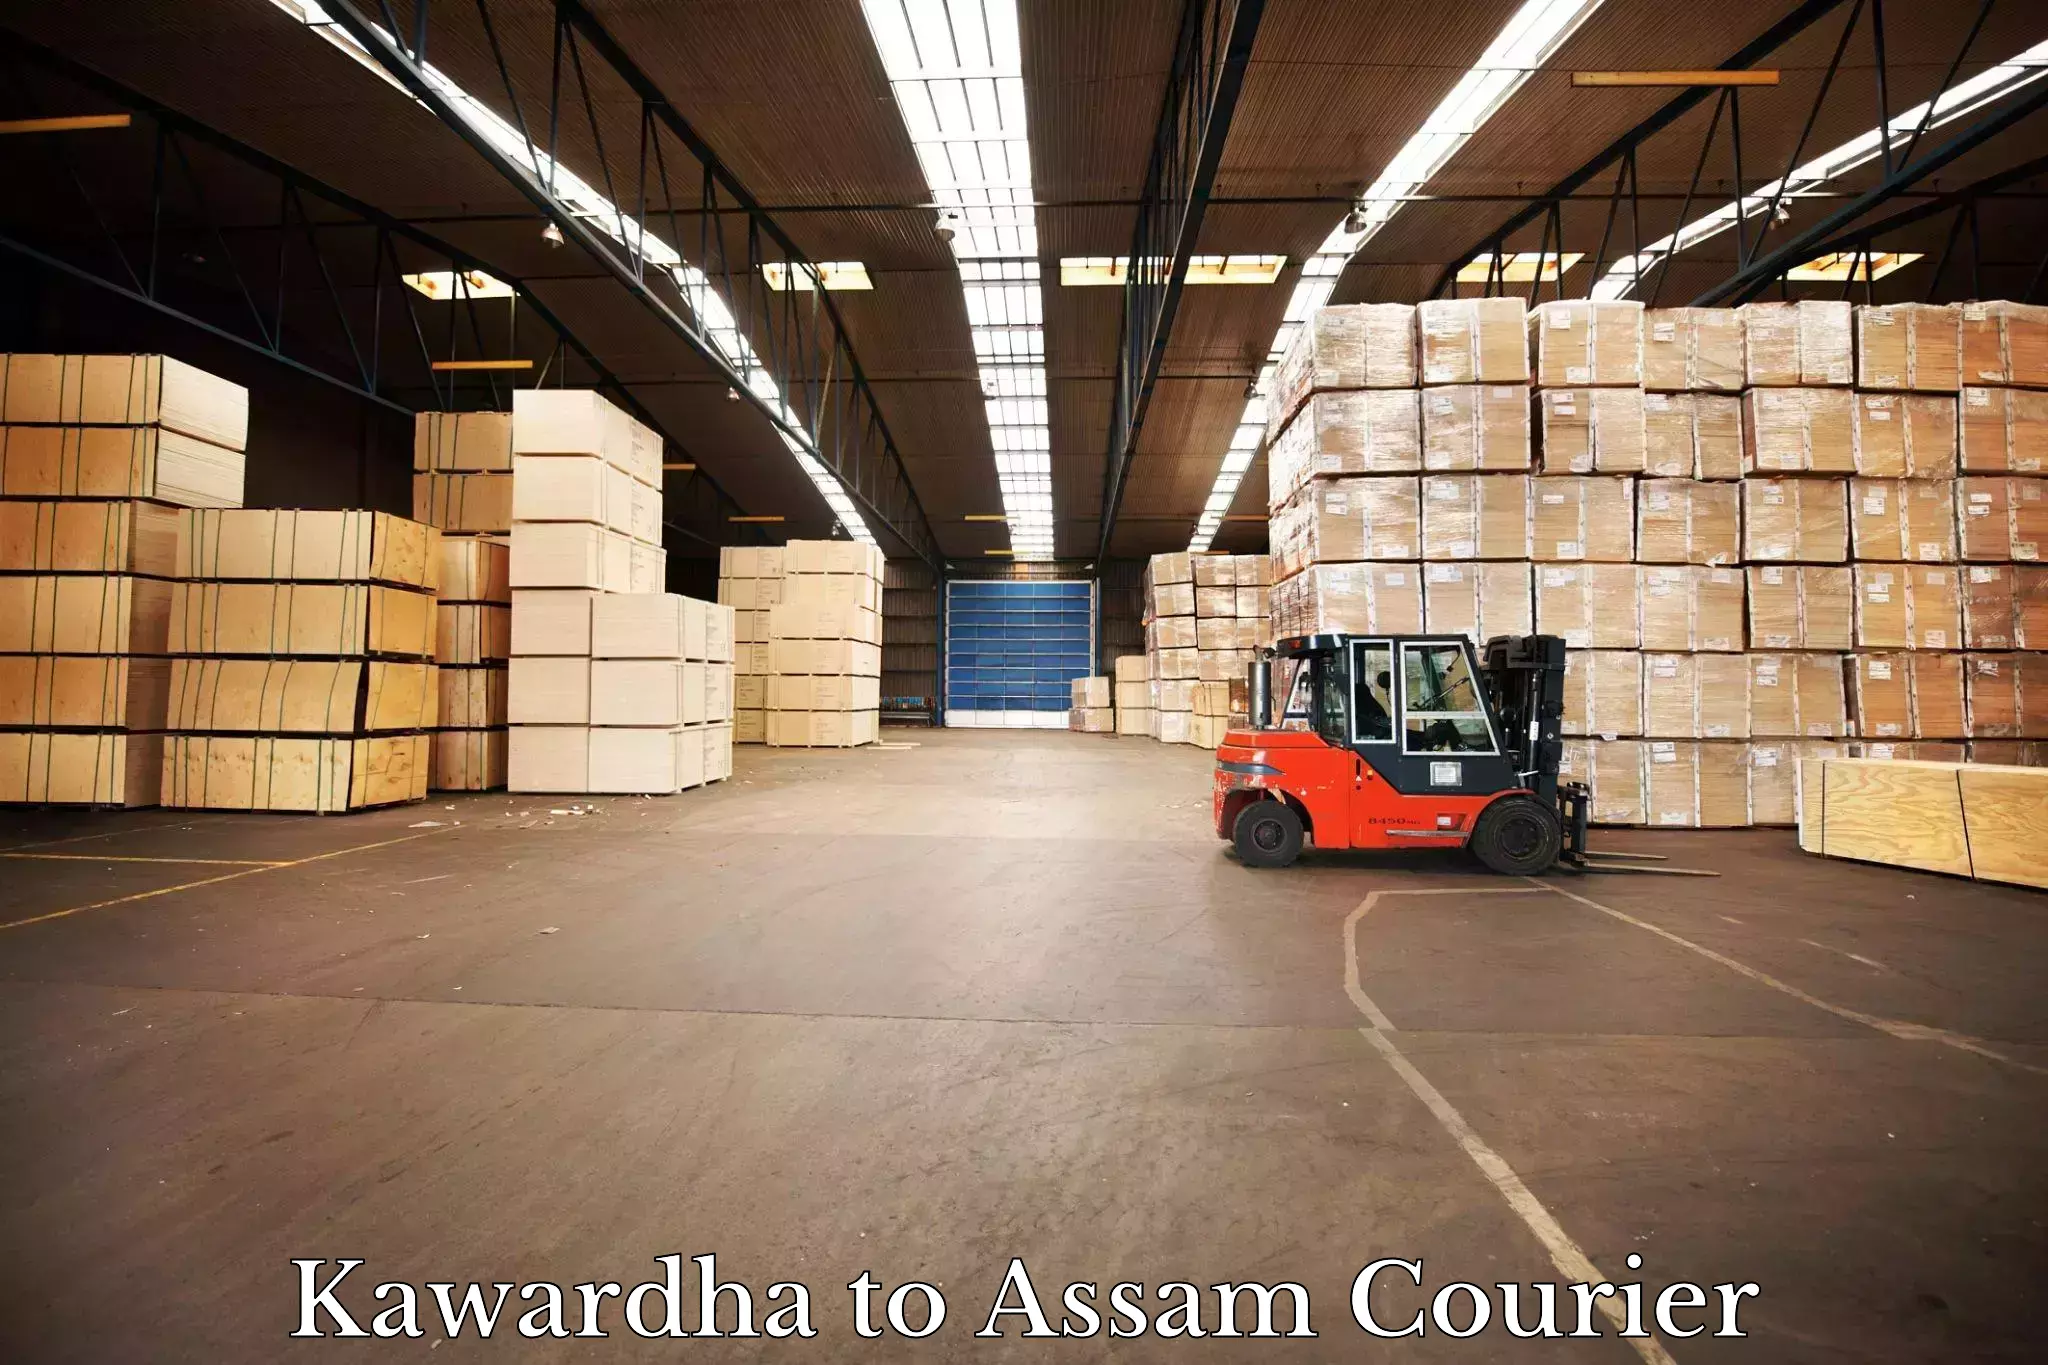 24/7 shipping services Kawardha to Tengakhat